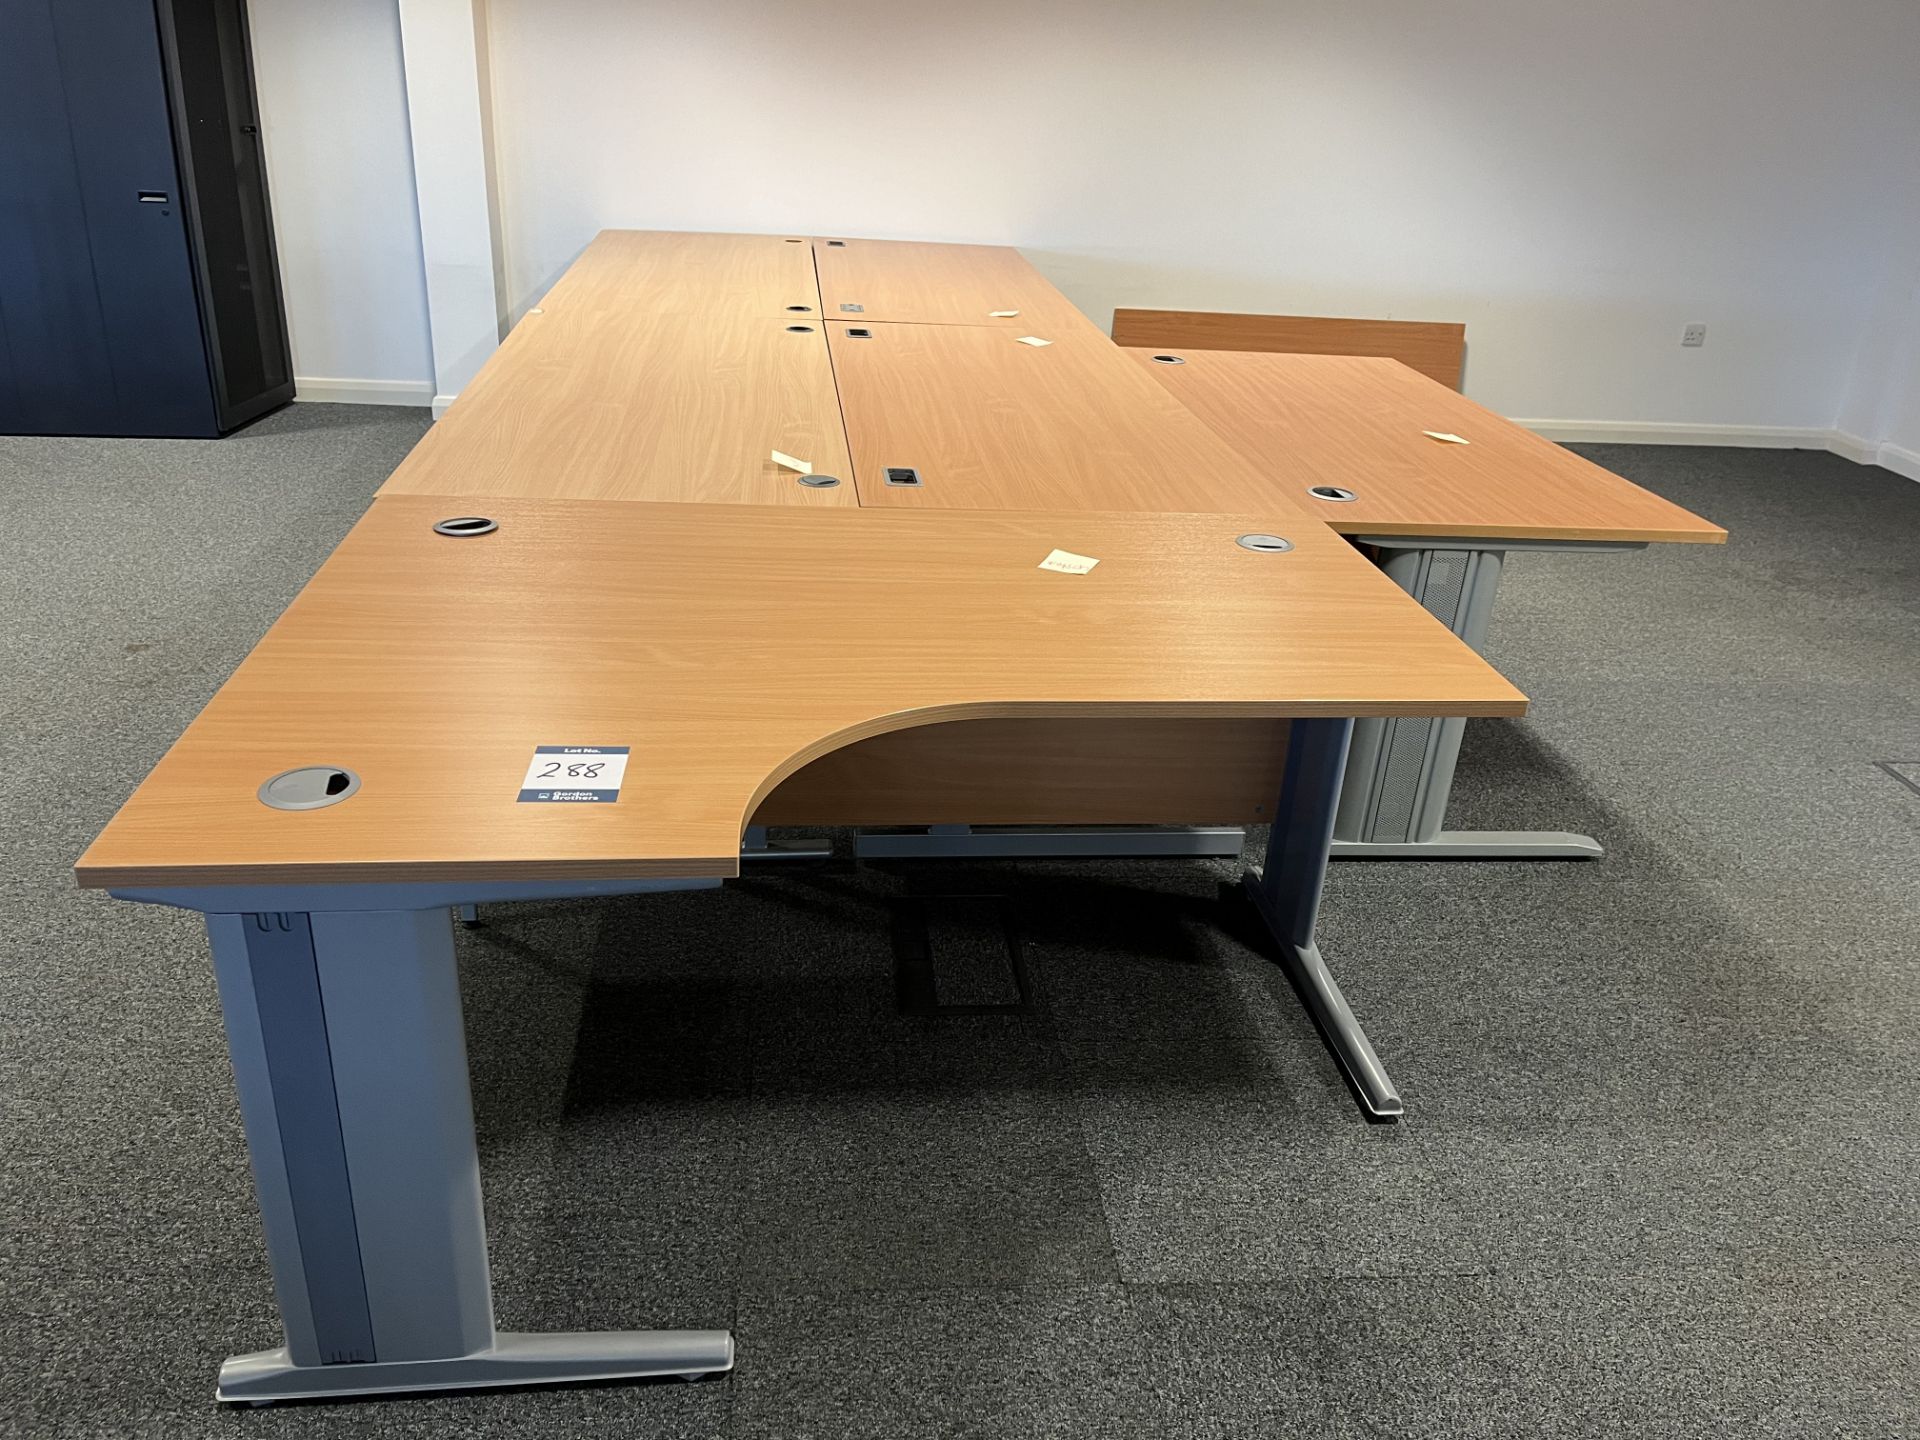 5x (no.) rectangular light oak veneer desks and a shaped front light oak veneer desk